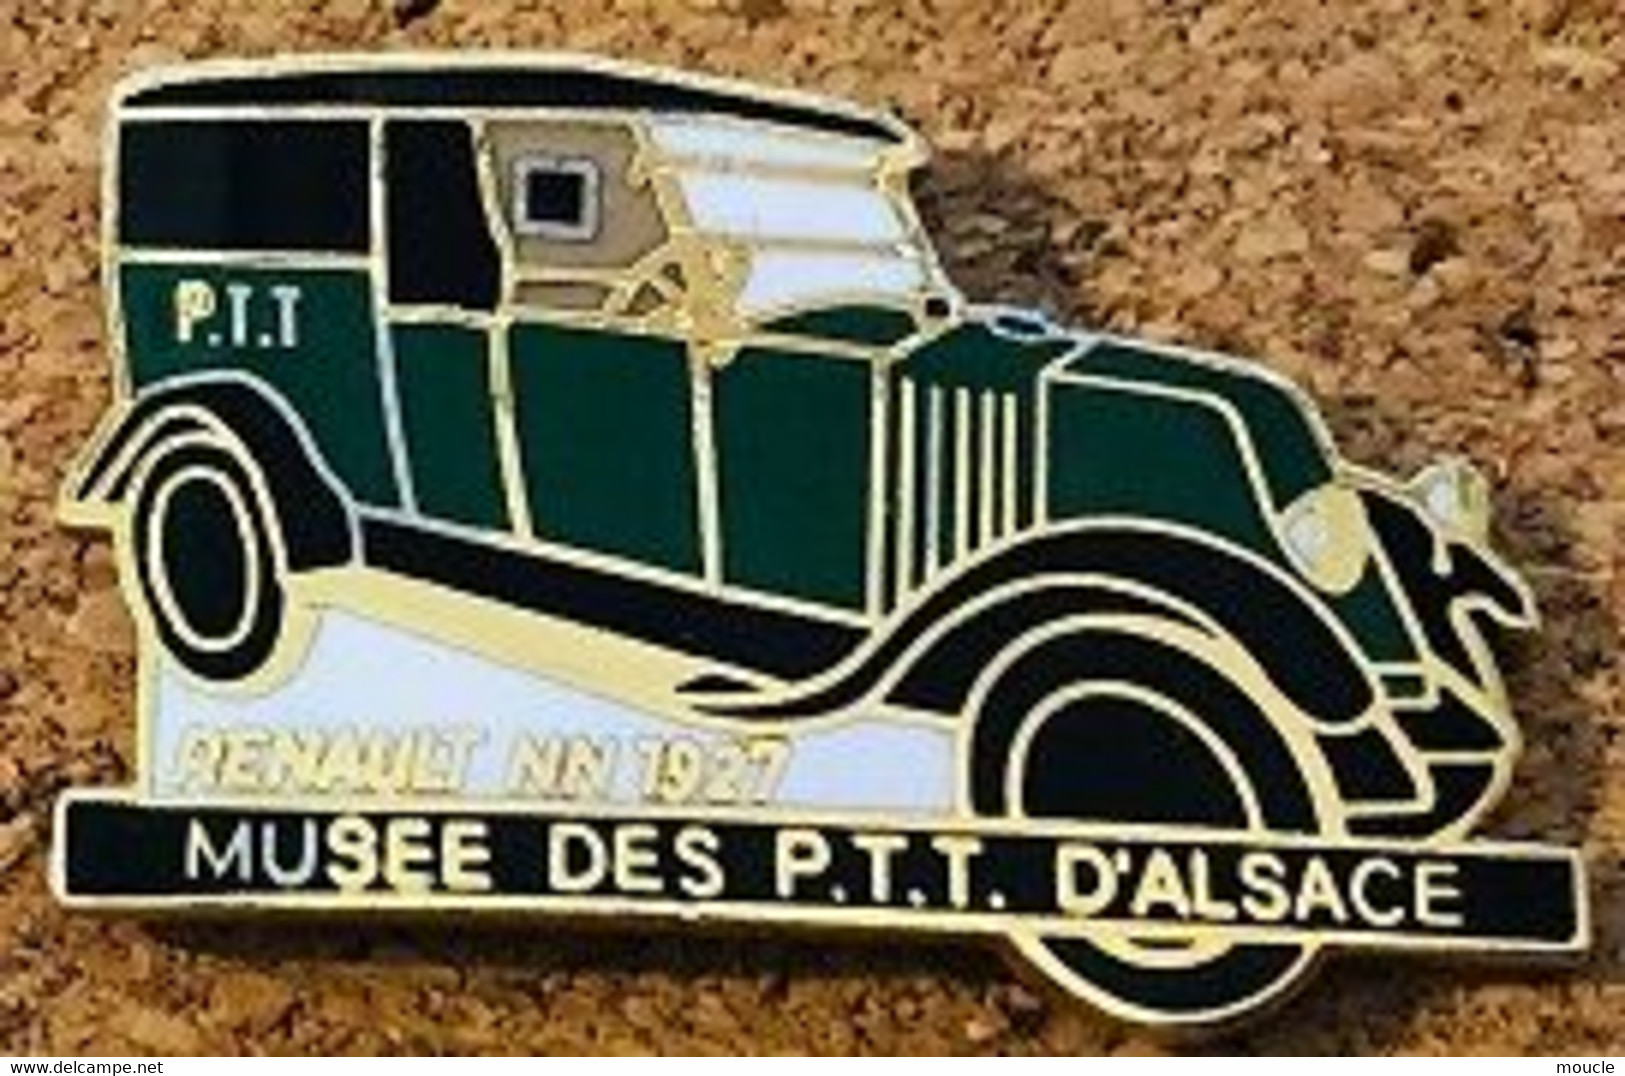 MUSEE DES P.T.T. D'ALSACE - FRANCE - VOITURE - CAR - AUTOMOBILE - AUTO - RENAULT NN 1927 - VERTE - GREEN -  (28) - Renault